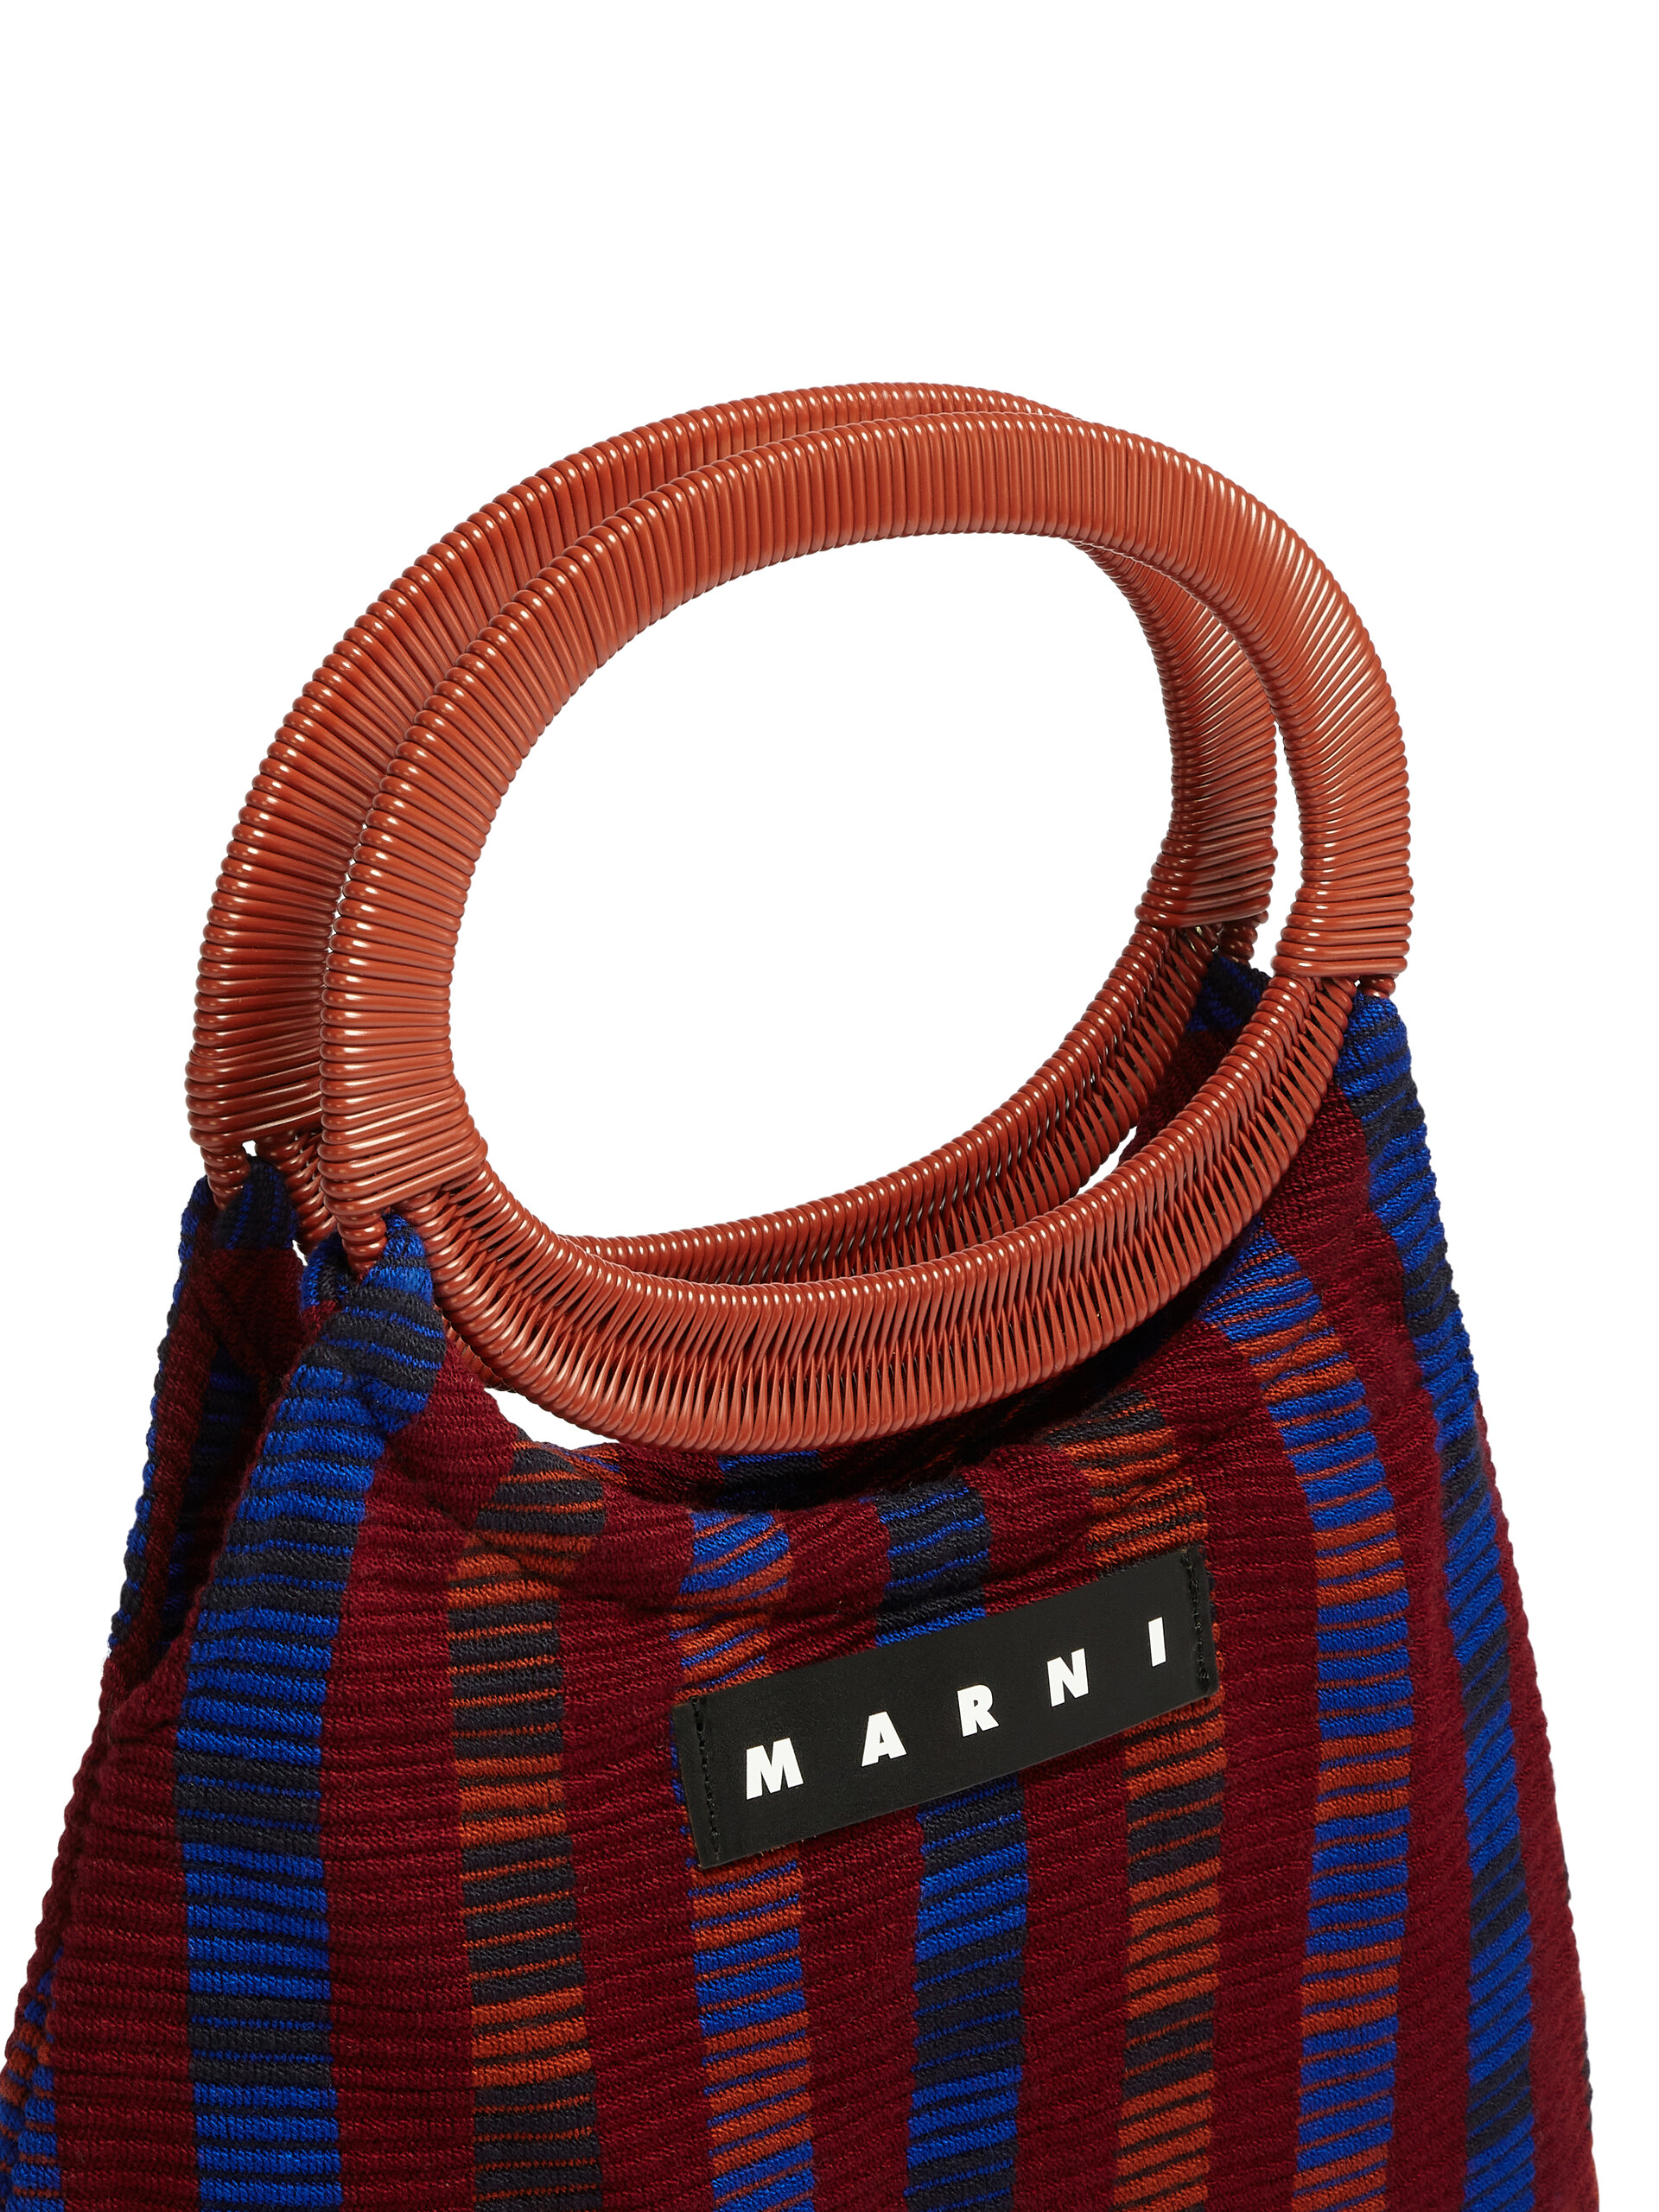 Borsa MARNI MARKET BOAT in cotone rigato rosso multicolor - Arredamento - Image 4